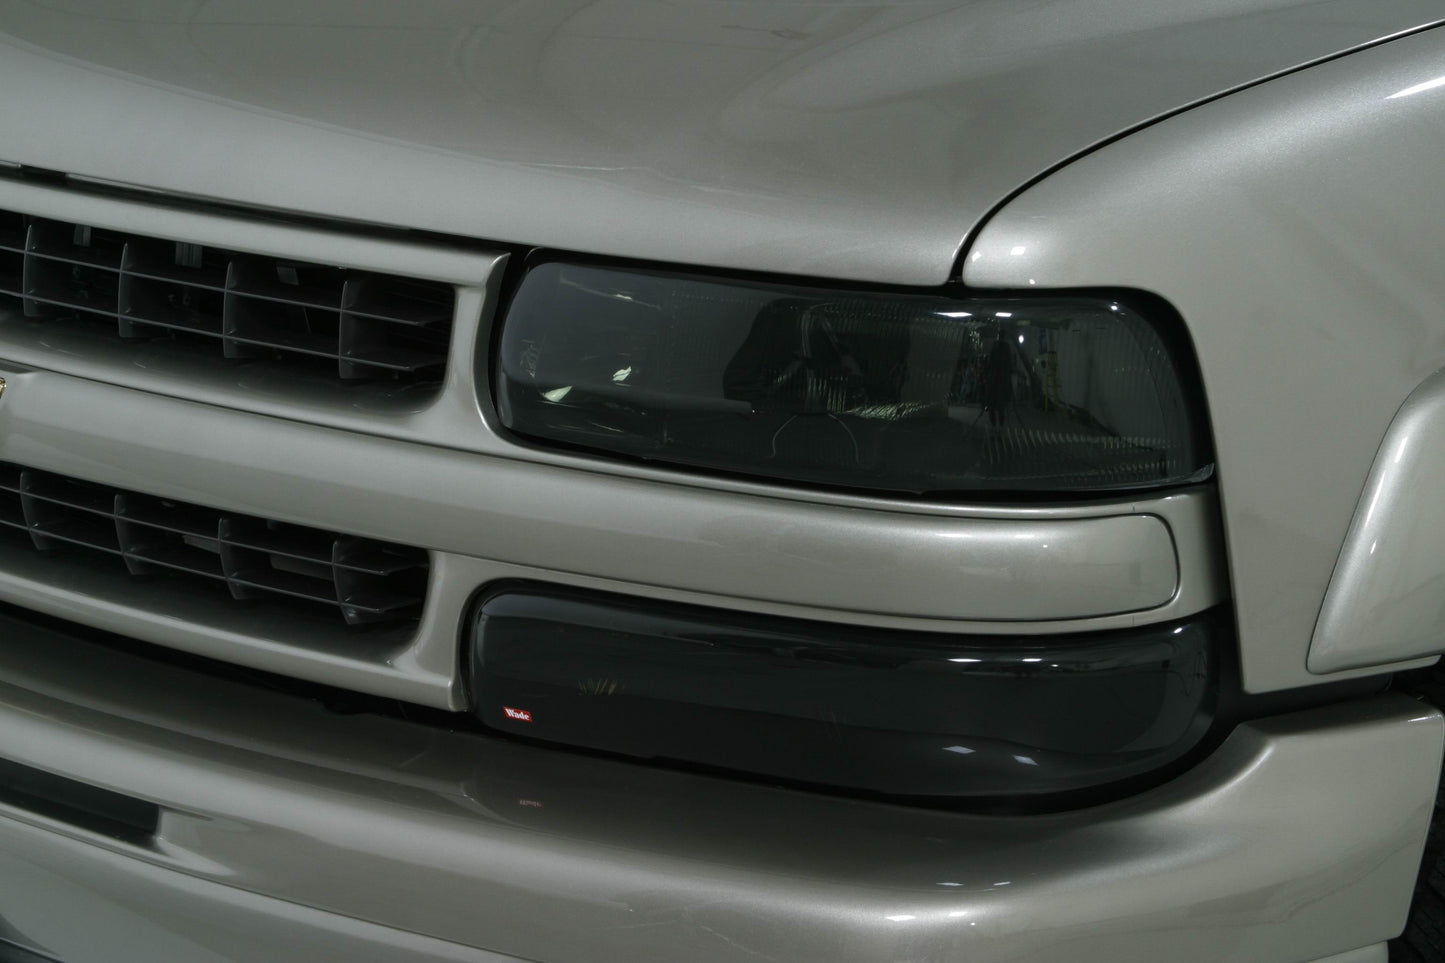 1994 Volkswagen Golf III Head Light Covers